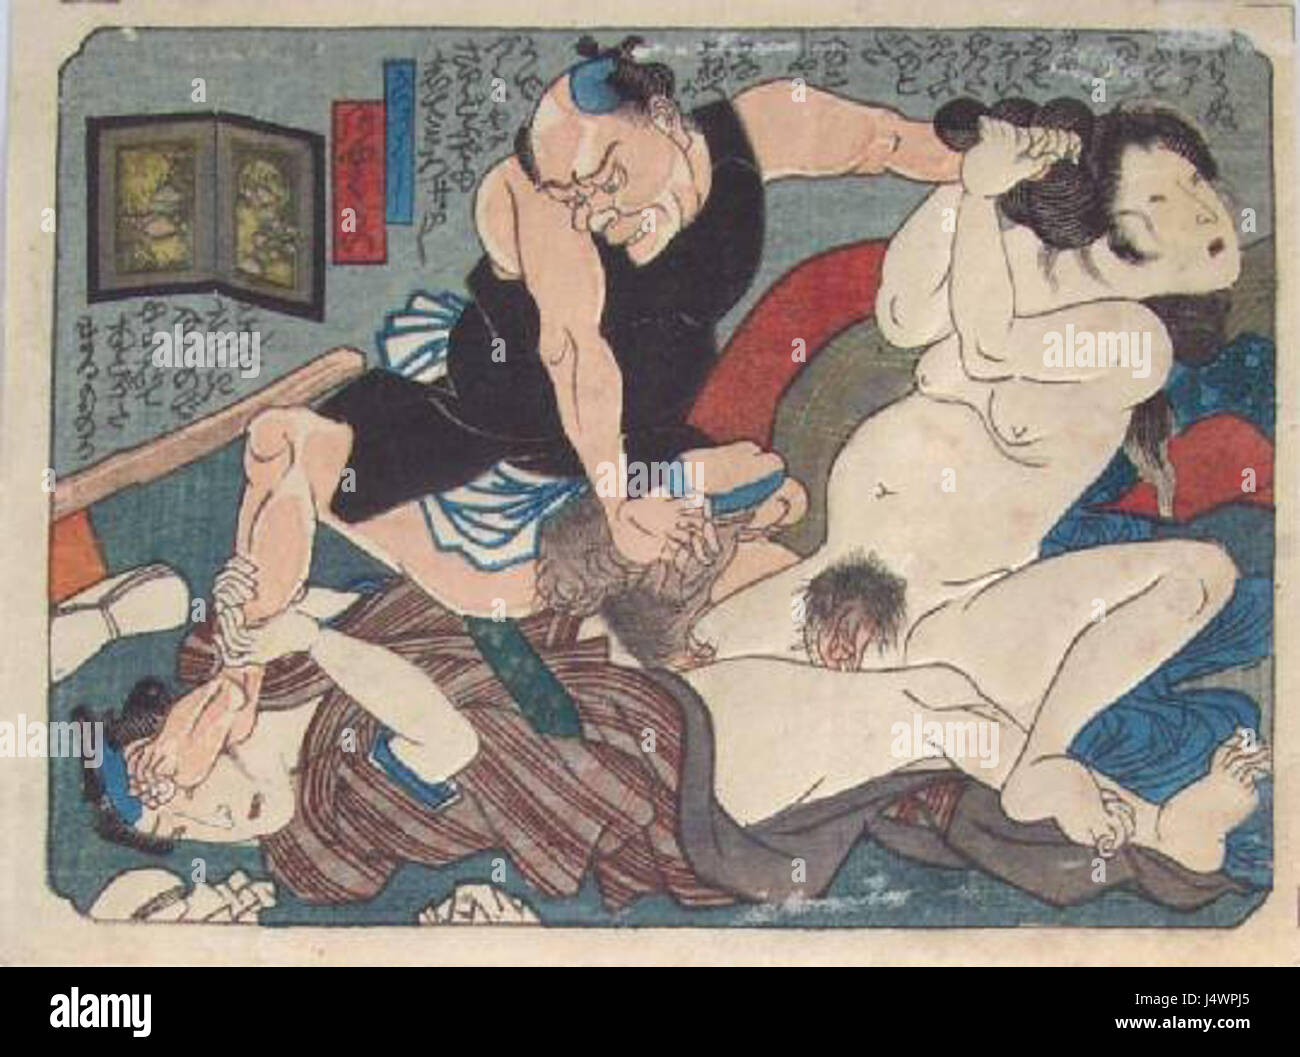 японская графика эротика фото 68